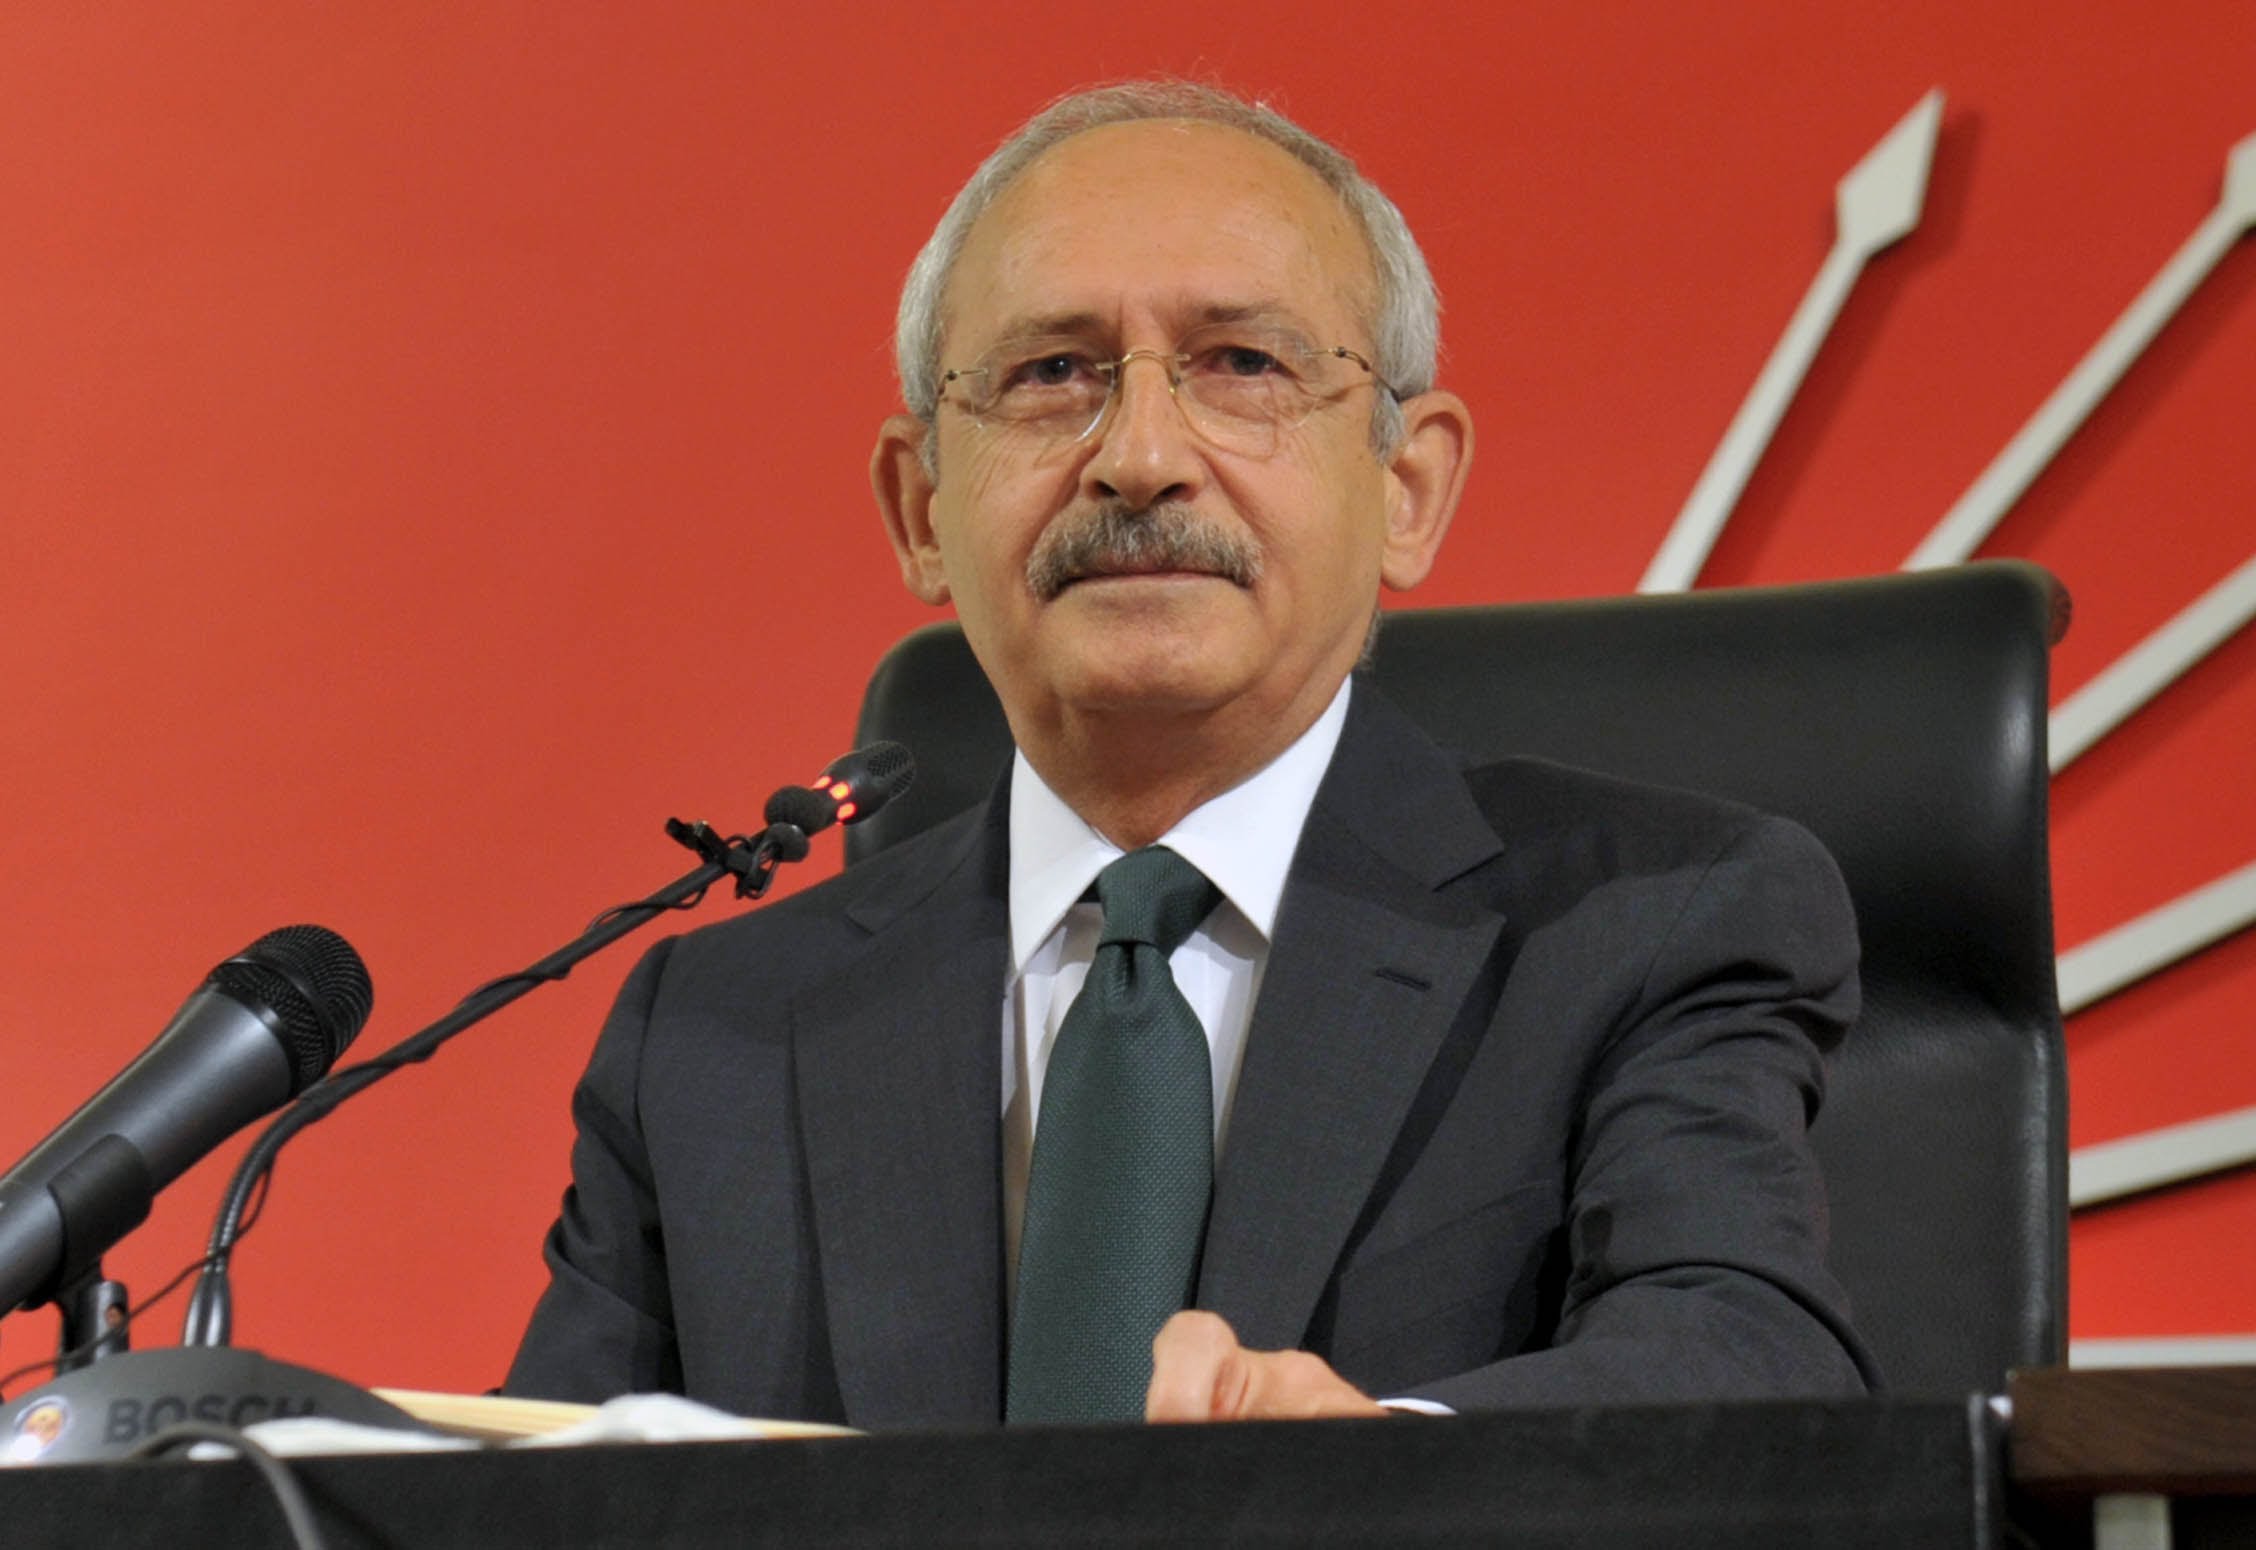 Лидерът на турската опозиция Кемал Кълъчдароглу се зарече да върне